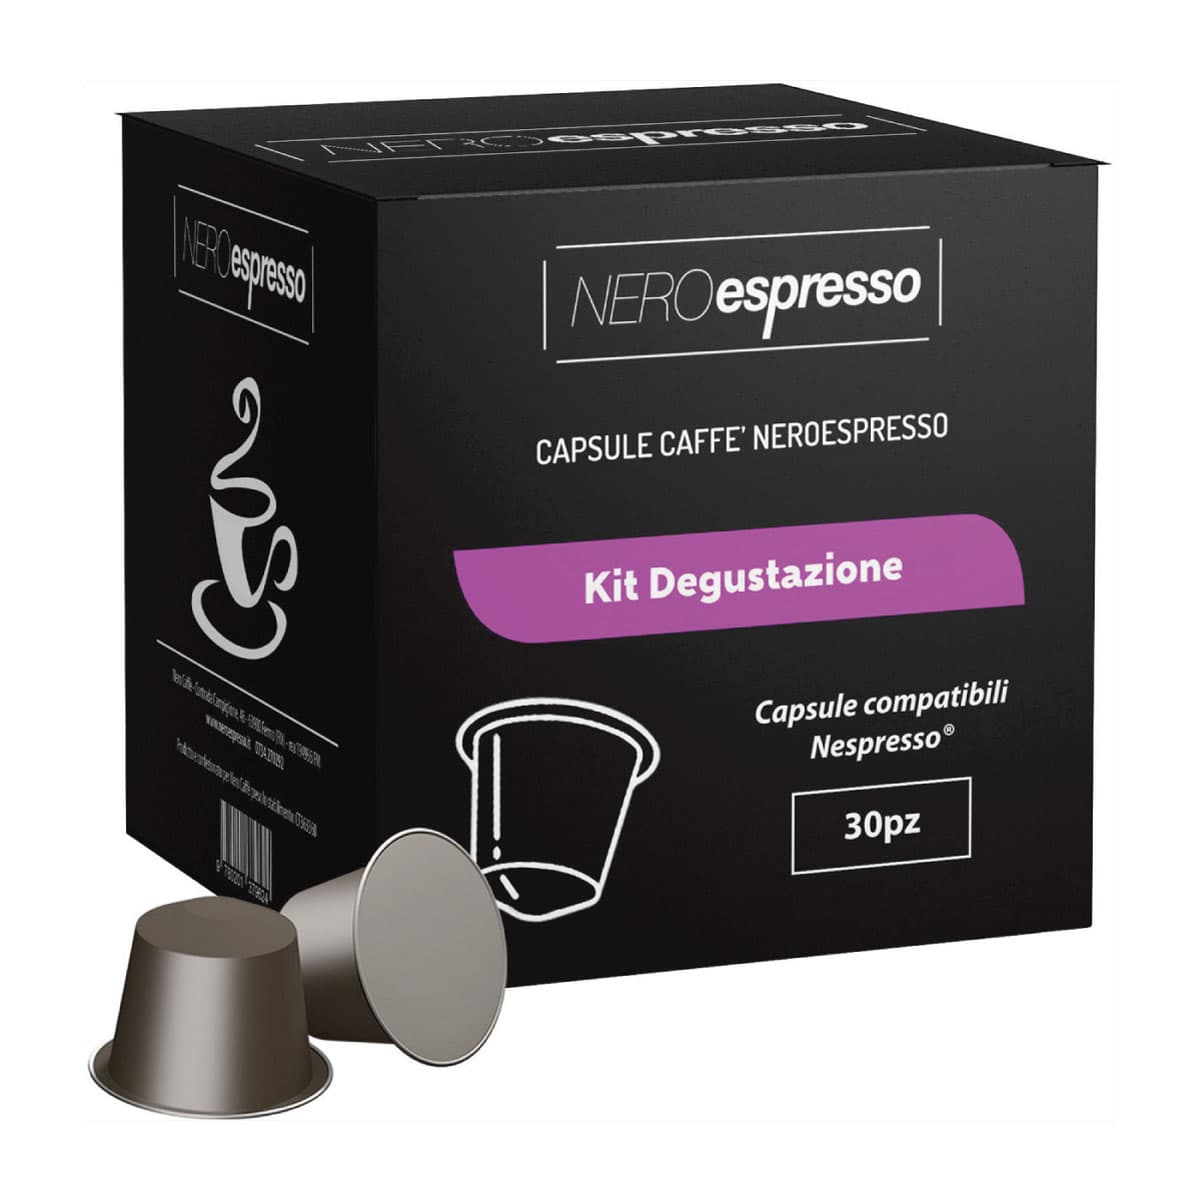 Kit Degustazione 30 Capsule Caffè Compatibili Nespresso - Nero Espresso